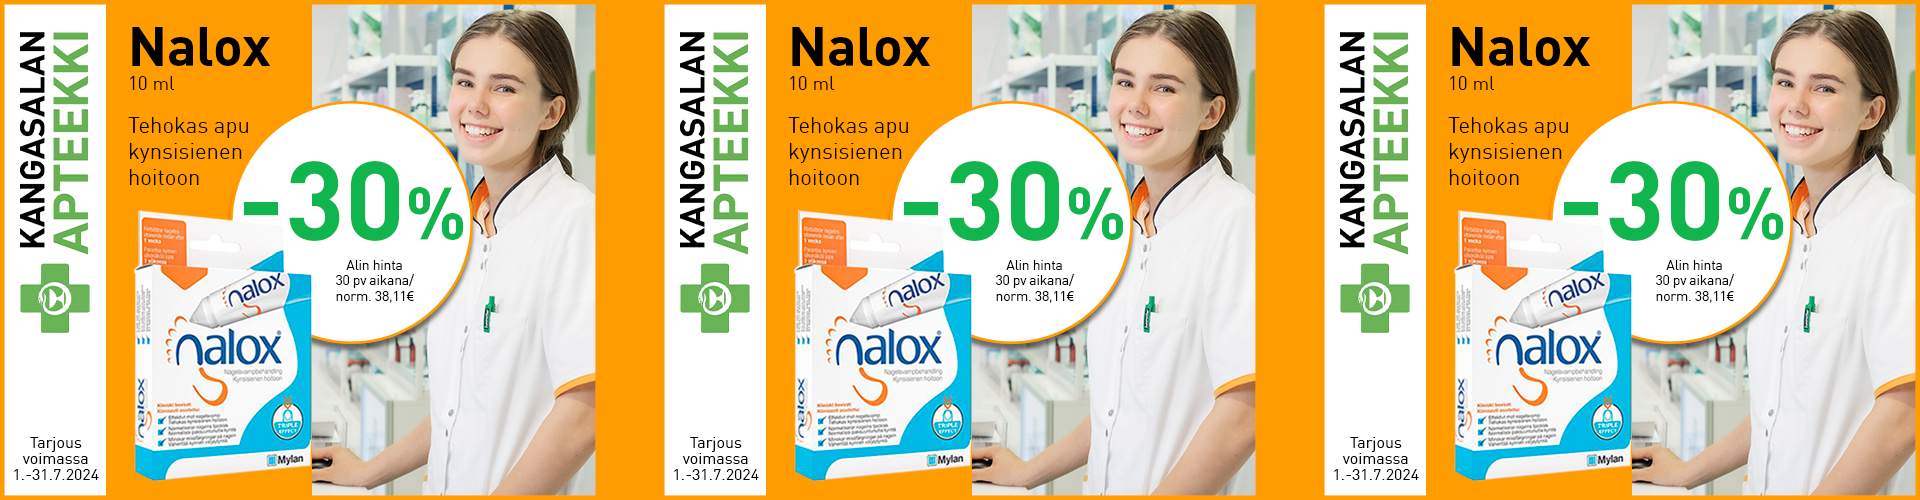 Heinäkuun etuna Nalox kynsisienenhoitoaine -30%!